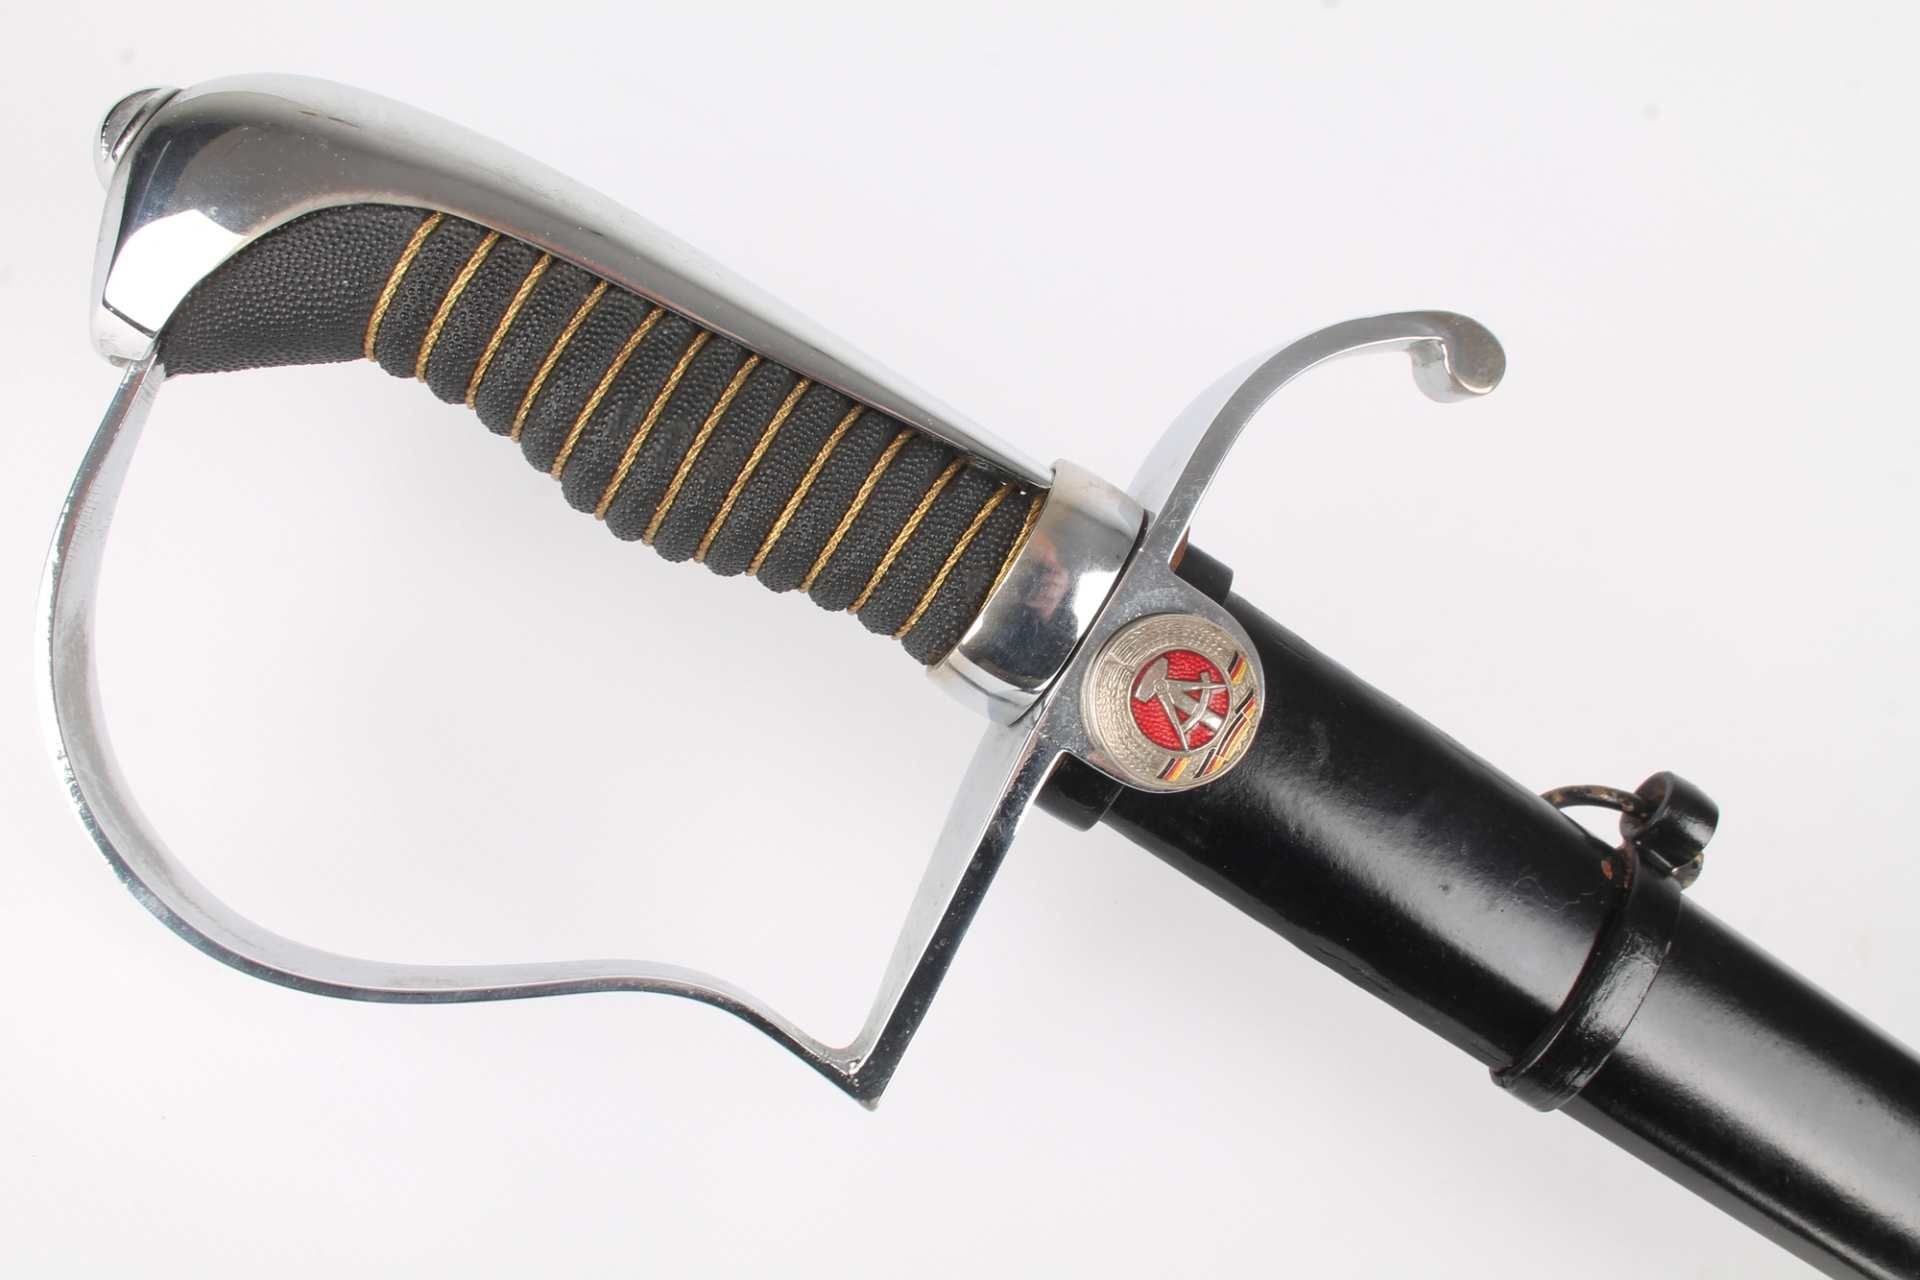 NVA Offizier's Paradesäbel, GDR saber sword, - Image 2 of 8